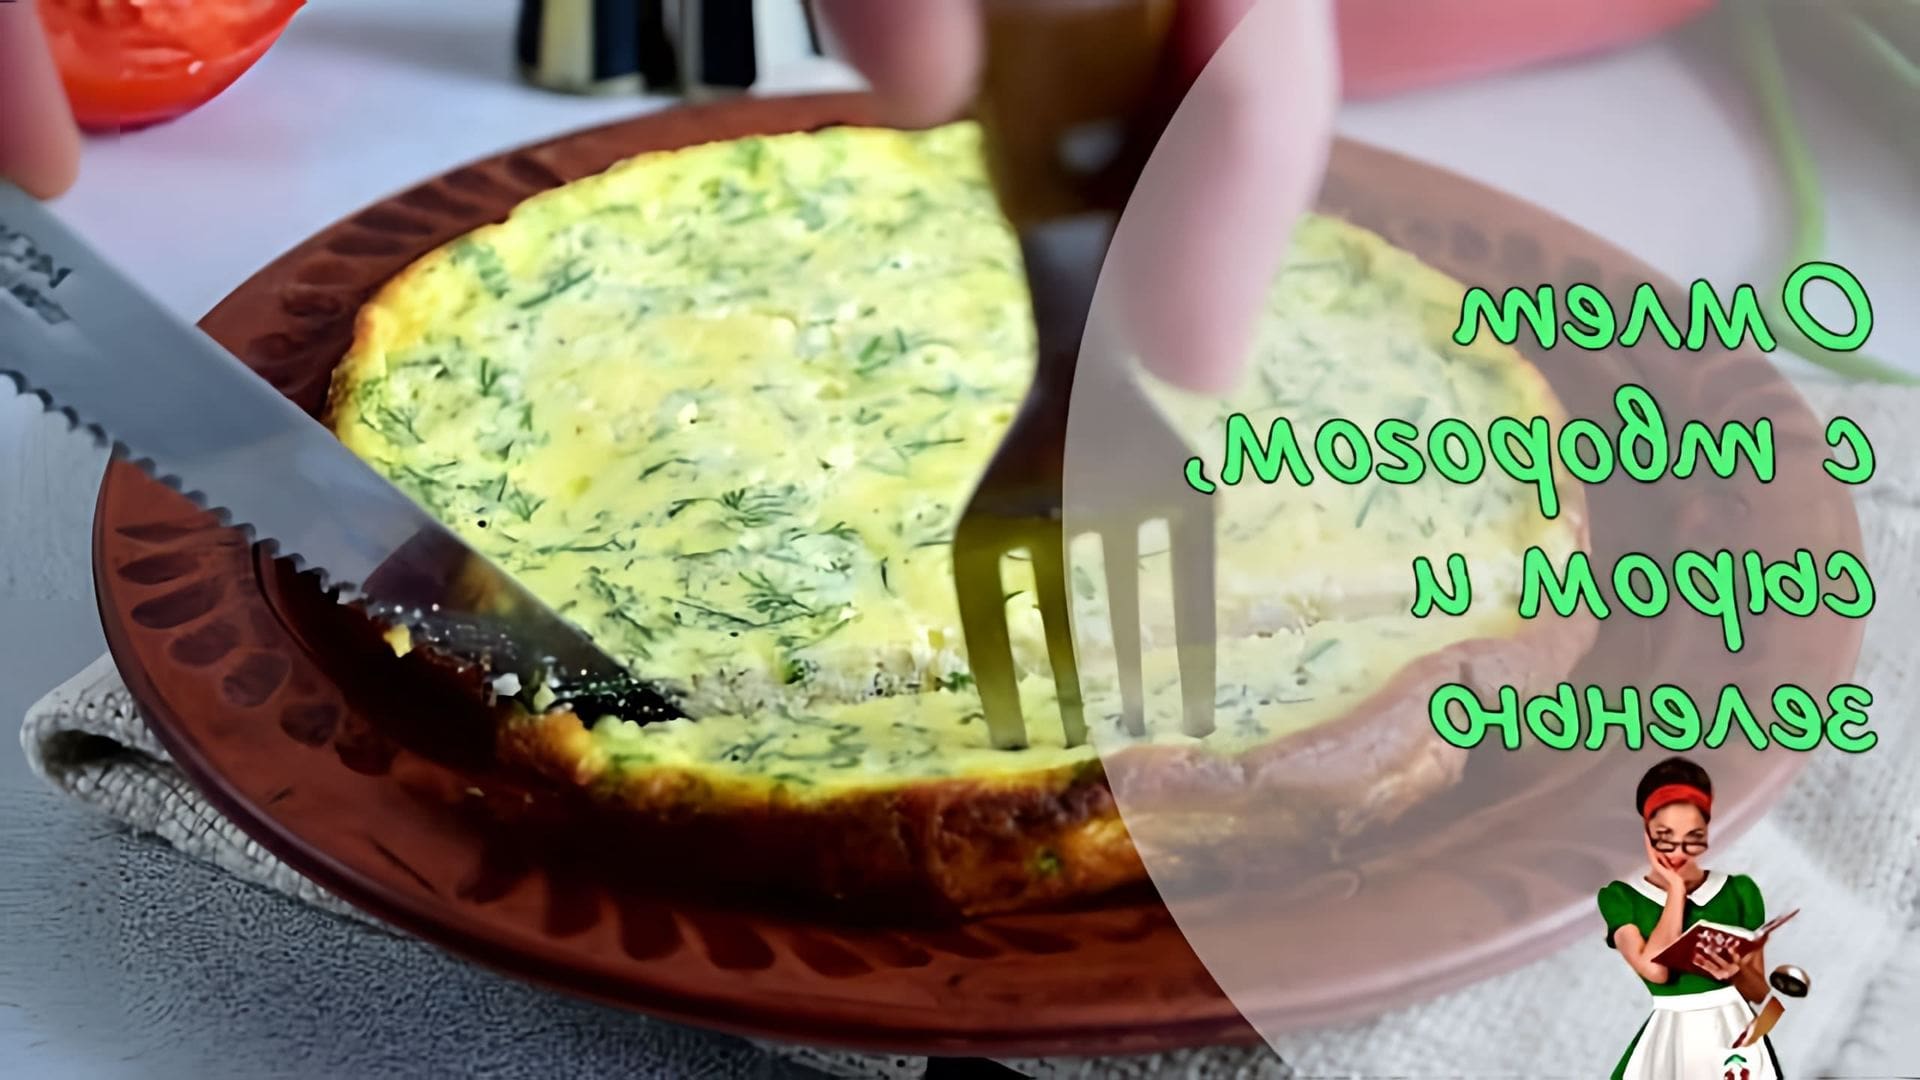 В этом видео демонстрируется рецепт приготовления творожного омлета на завтрак